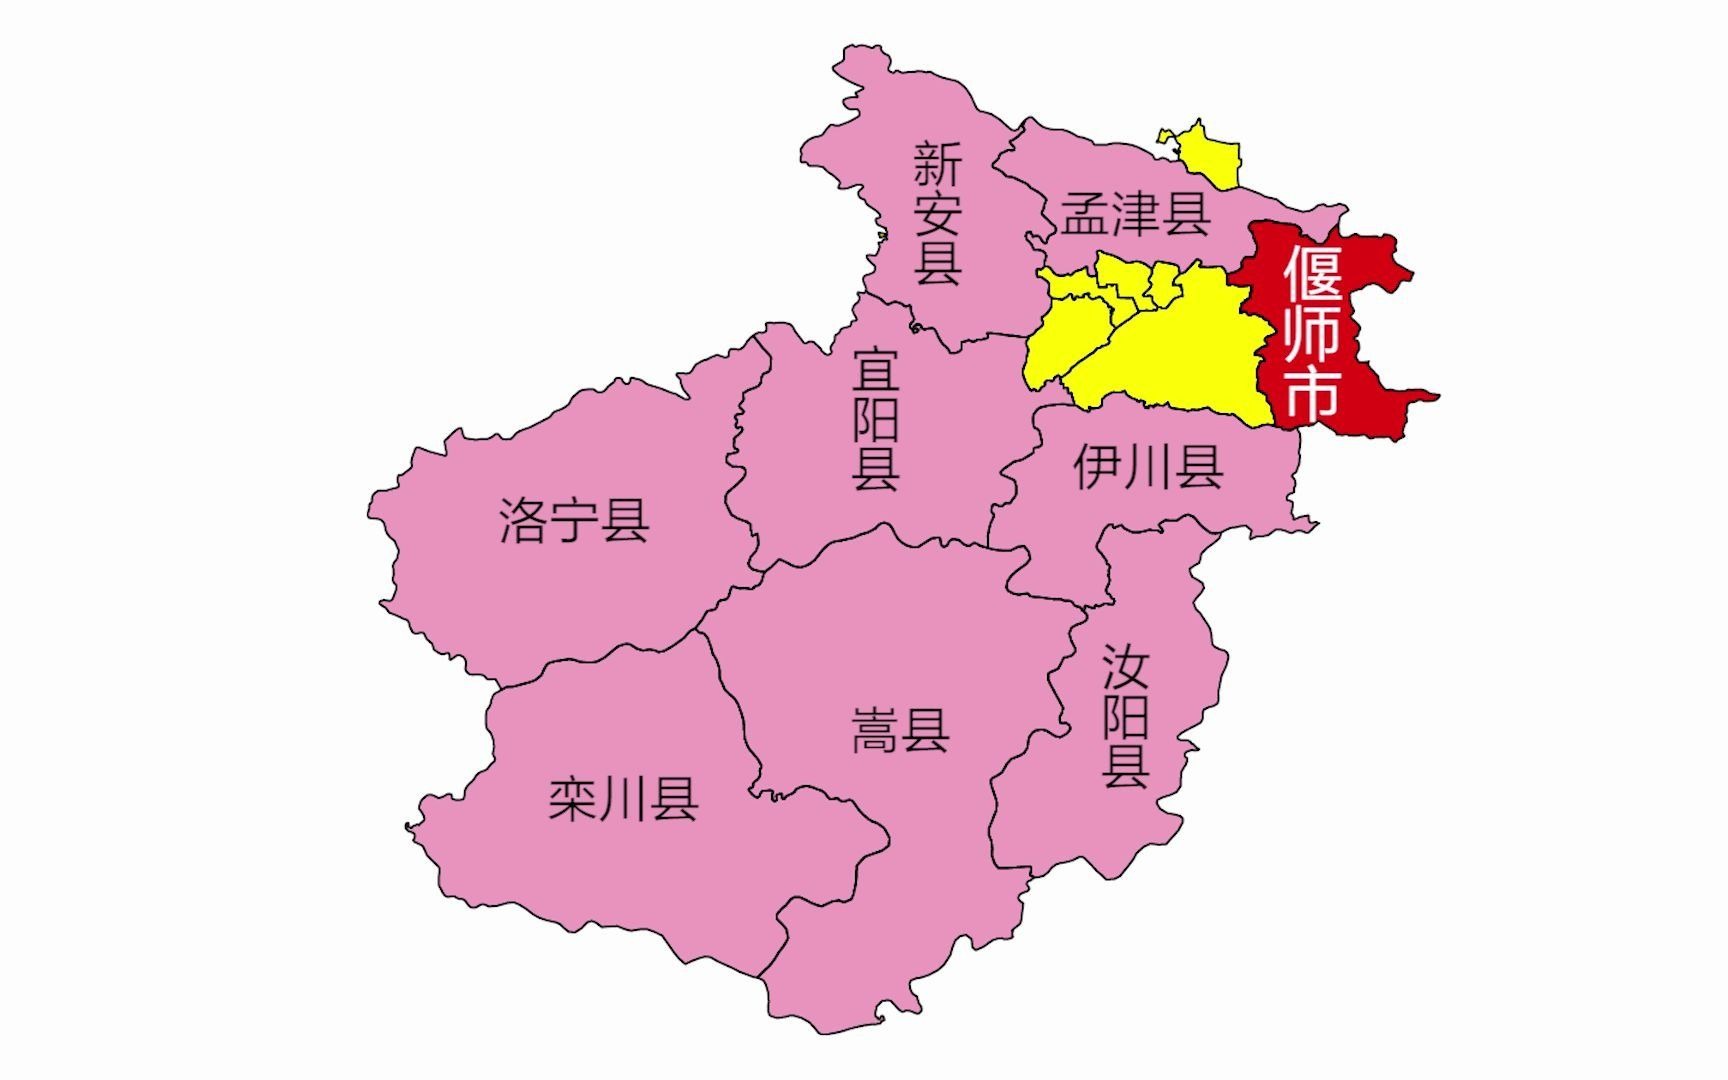 1分钟行政区划地图,河南古都洛阳,6区8县1县级市